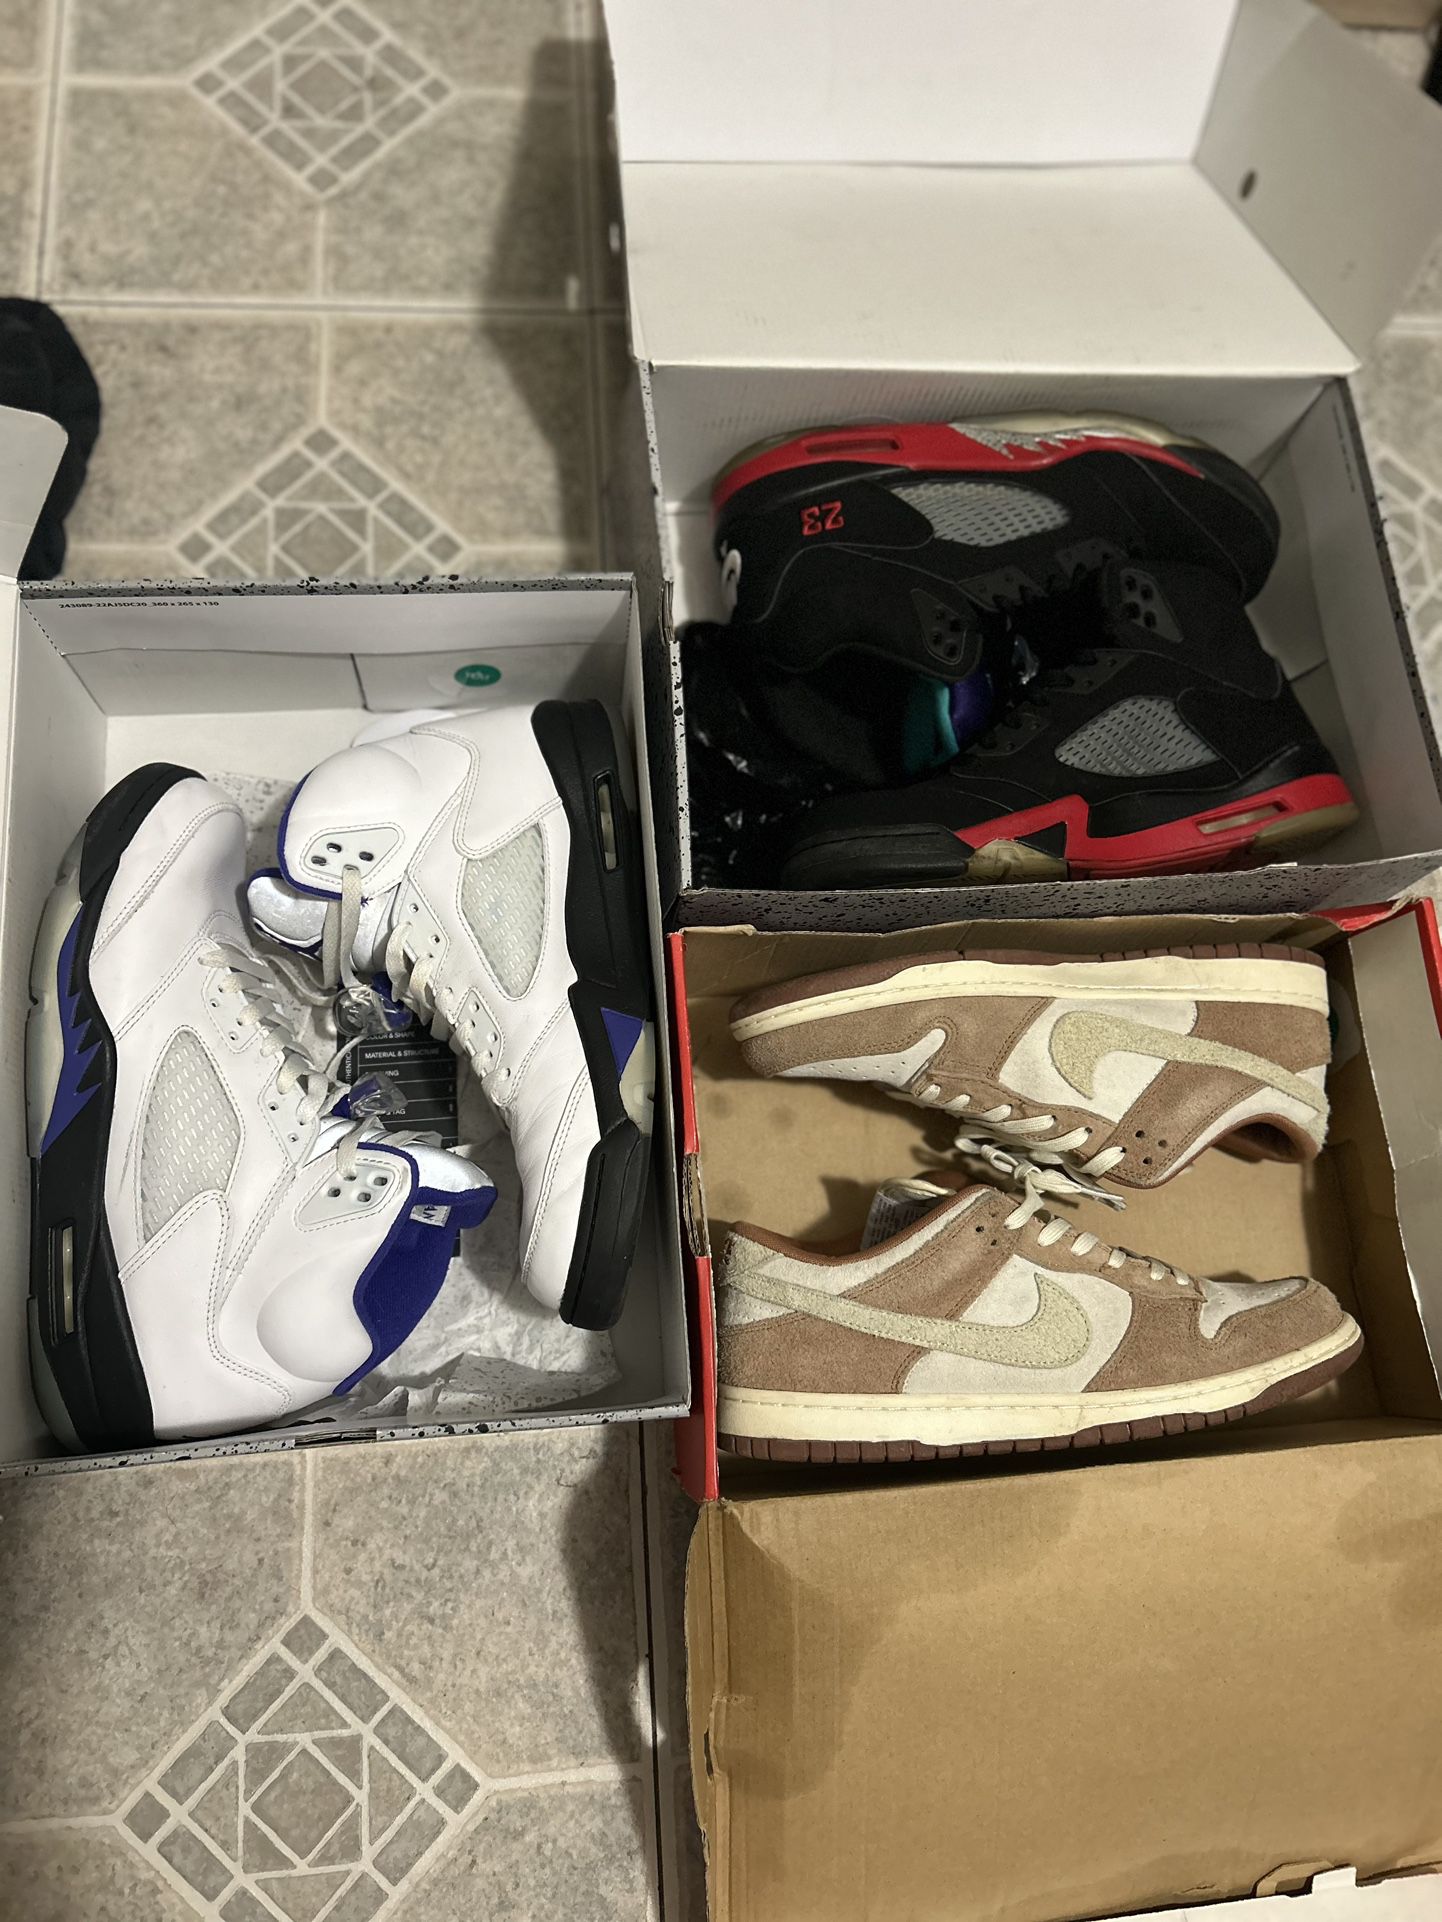 Nike Air Jordan Retro 5s And Dunk Lows Bundle Lot